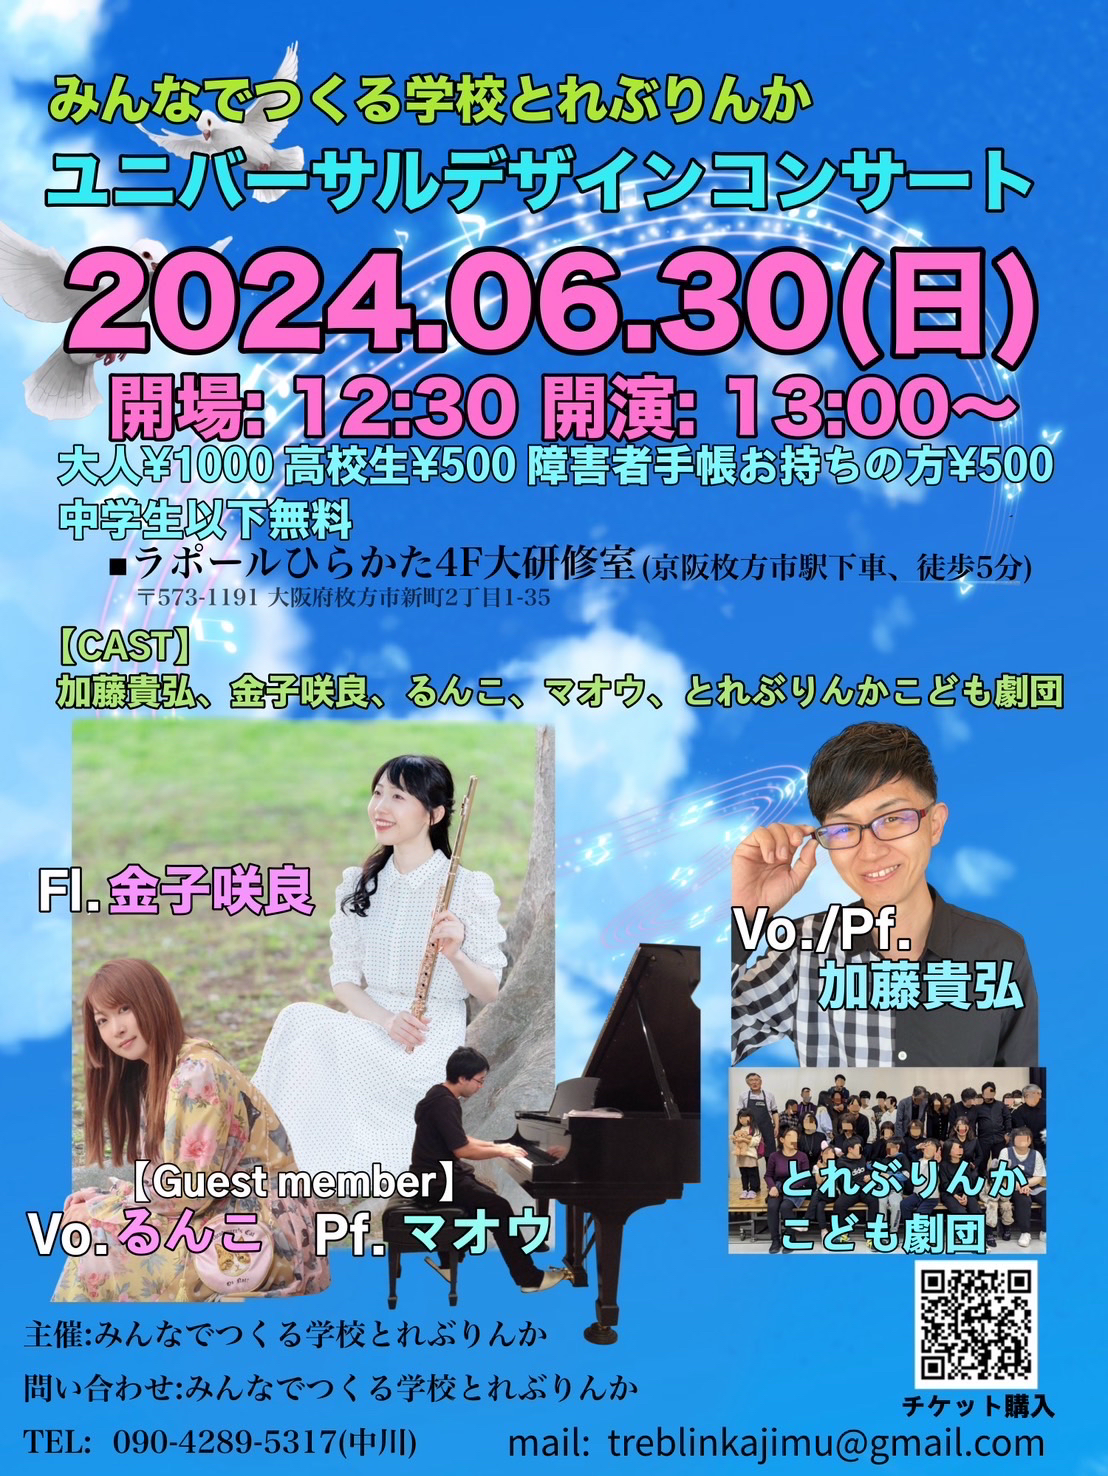 ユニバーサルデザインコンサート 2024.6.30(Sun) @枚方